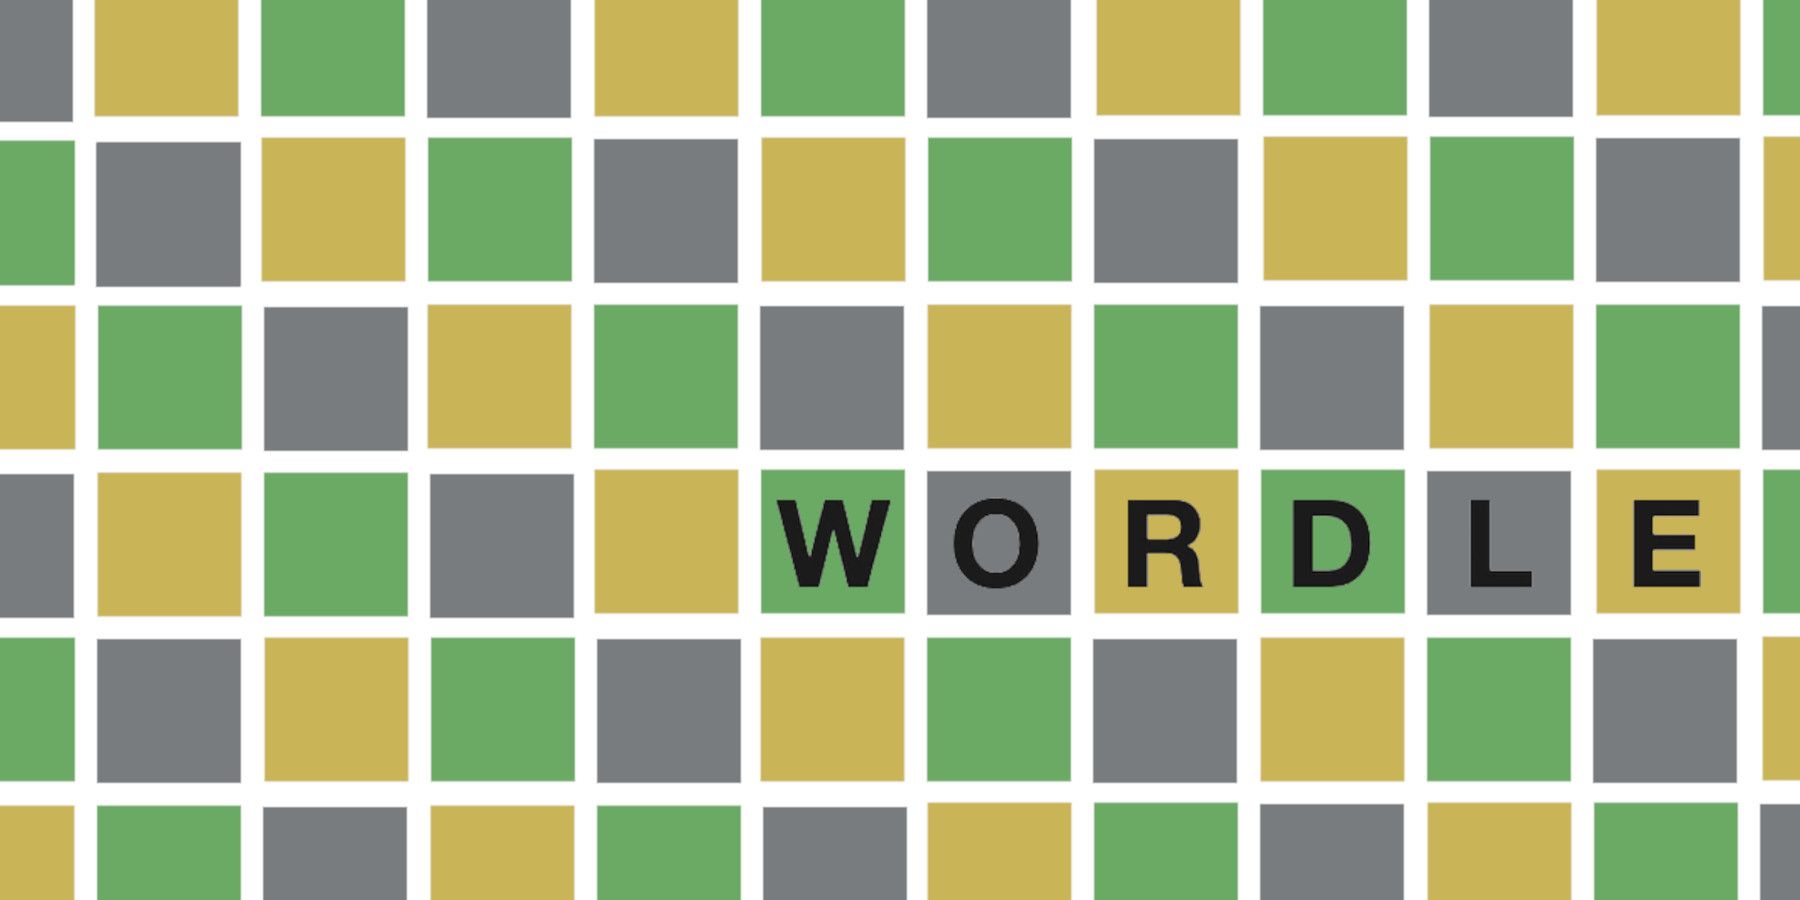 Wordle 231 პასუხი 2022 წლის 5 თებერვალს